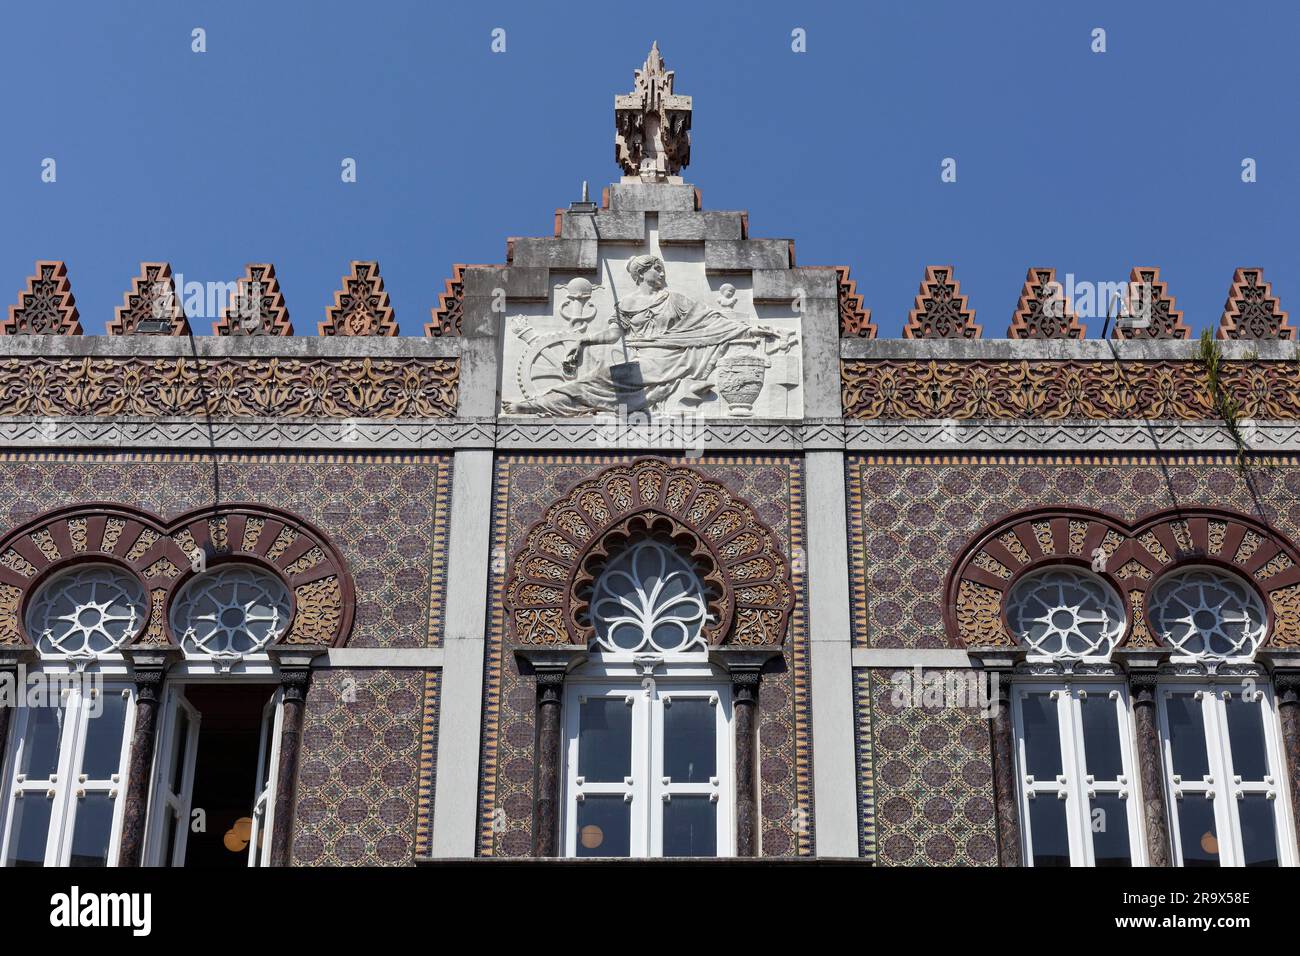 Façade en céramique avec fenêtre en fer à cheval, ancienne fabrique de céramique Devesas, bâtiment de style néo-islamique de 1899, Porto, Portugal Banque D'Images